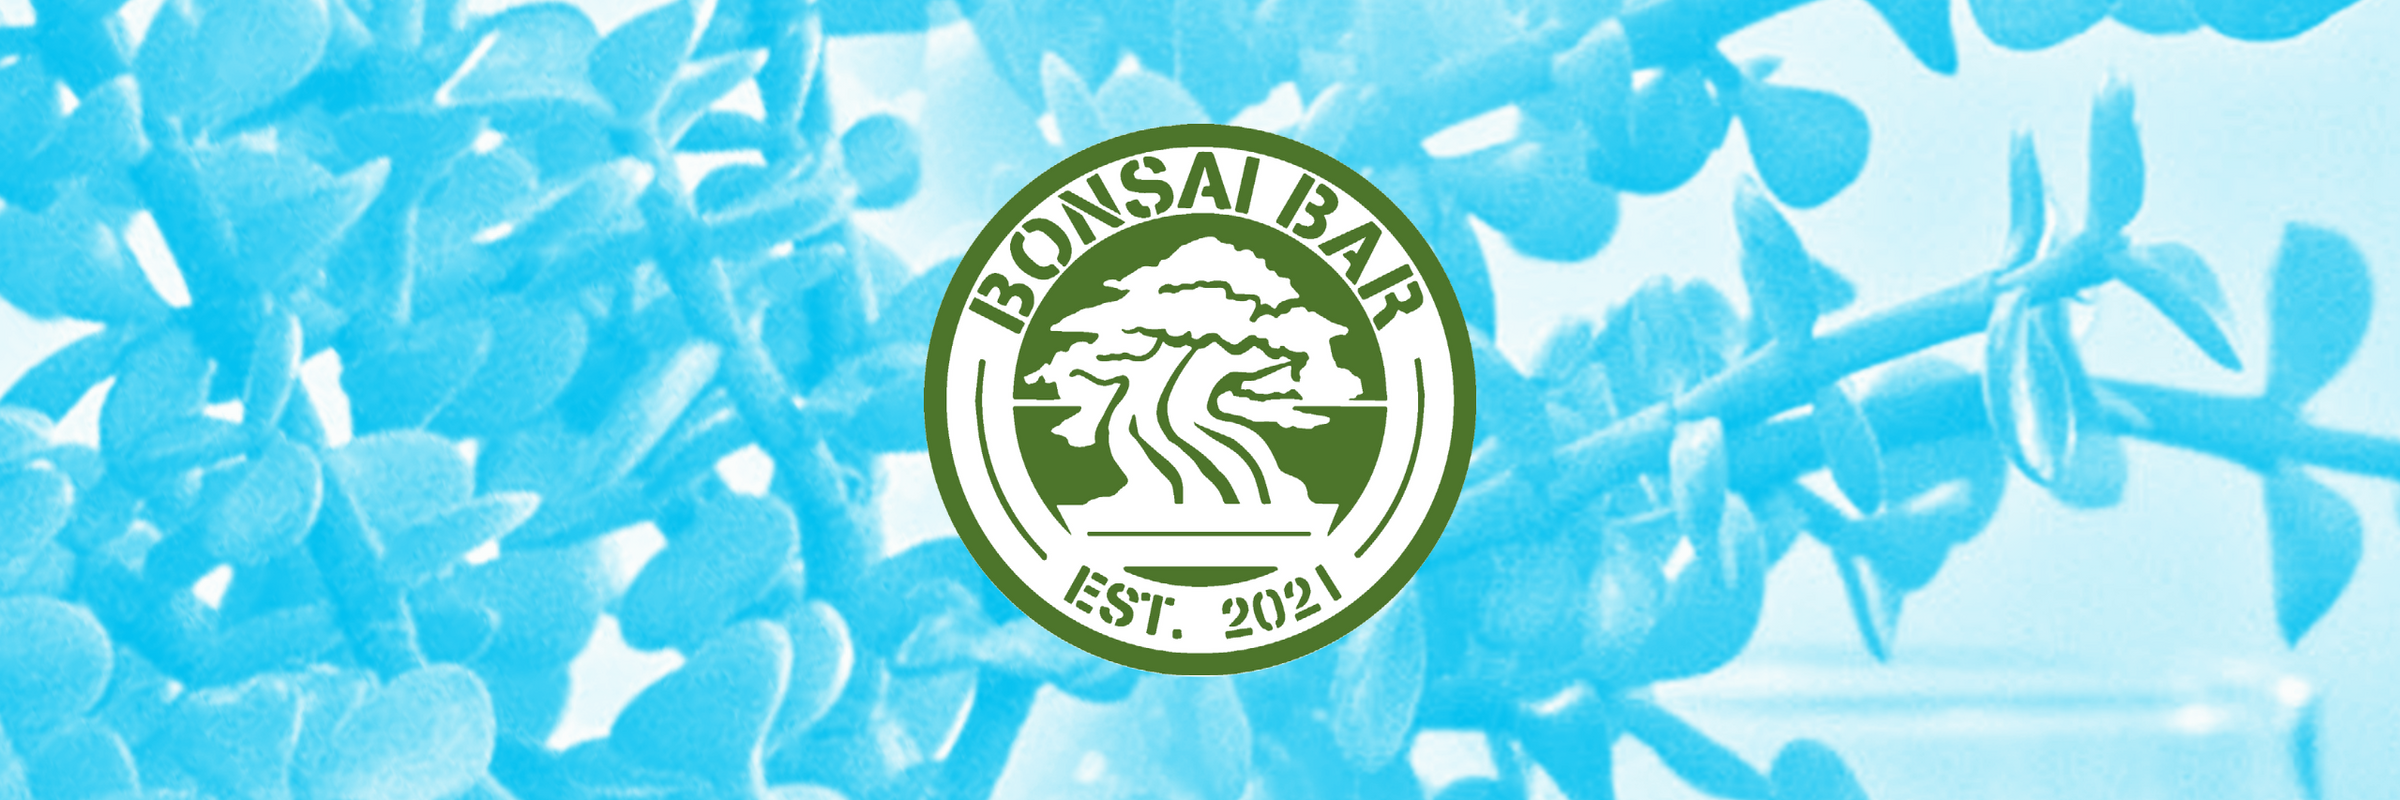 Bonsai Bar's Beginner Workshops